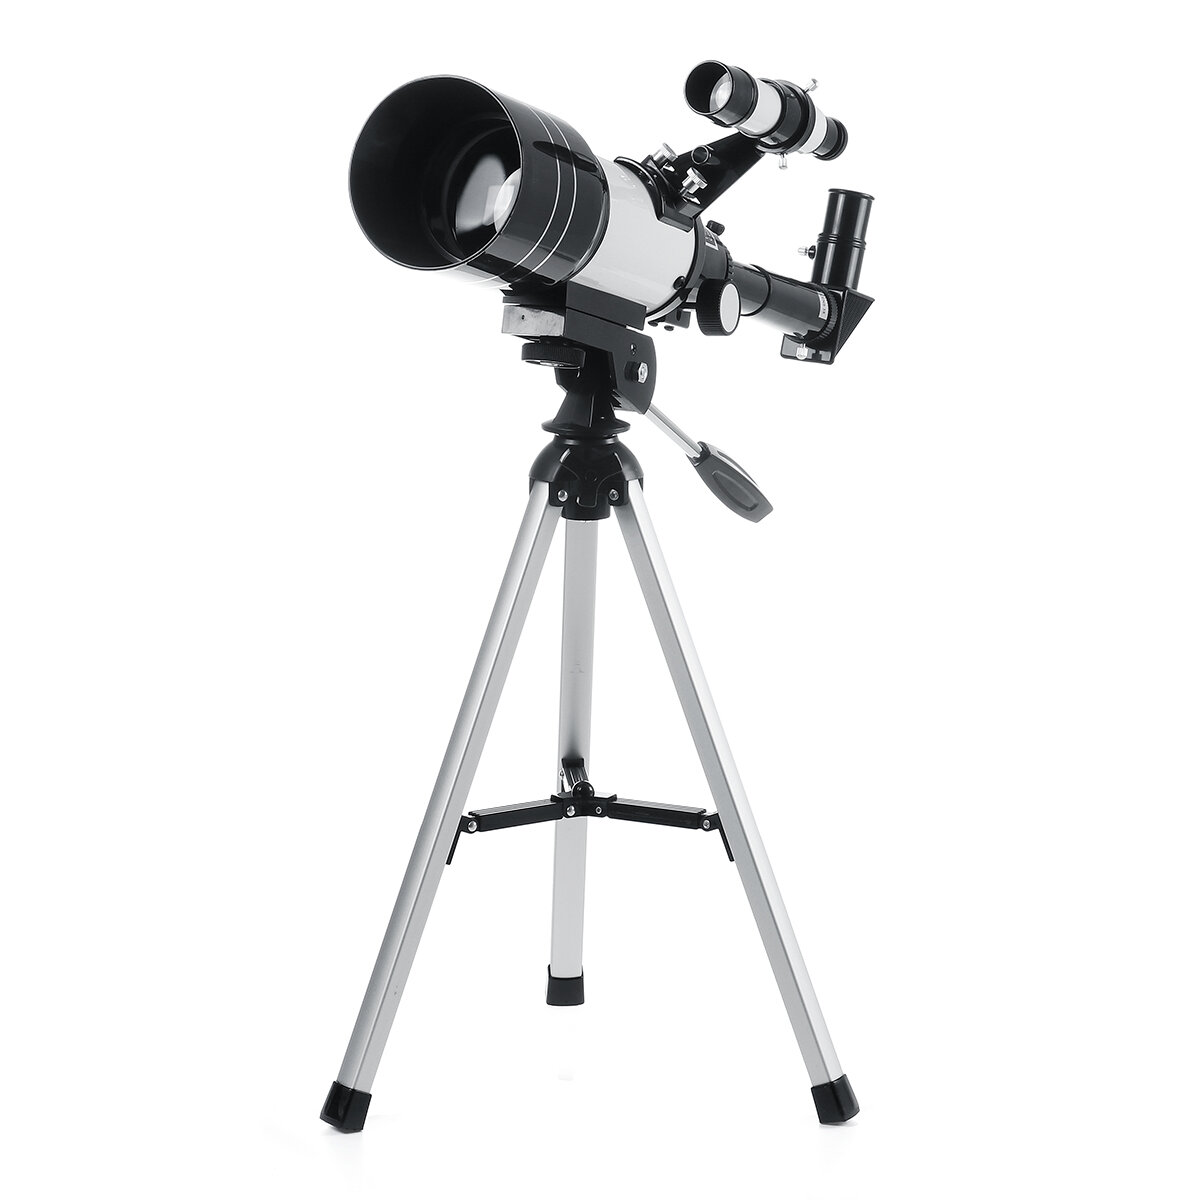 Professionele HD-astronomische telescoop van 150x70mm voor het bekijken van de ruimte en de maan. Ideaal voor gebruik buitenshuis en thuis.